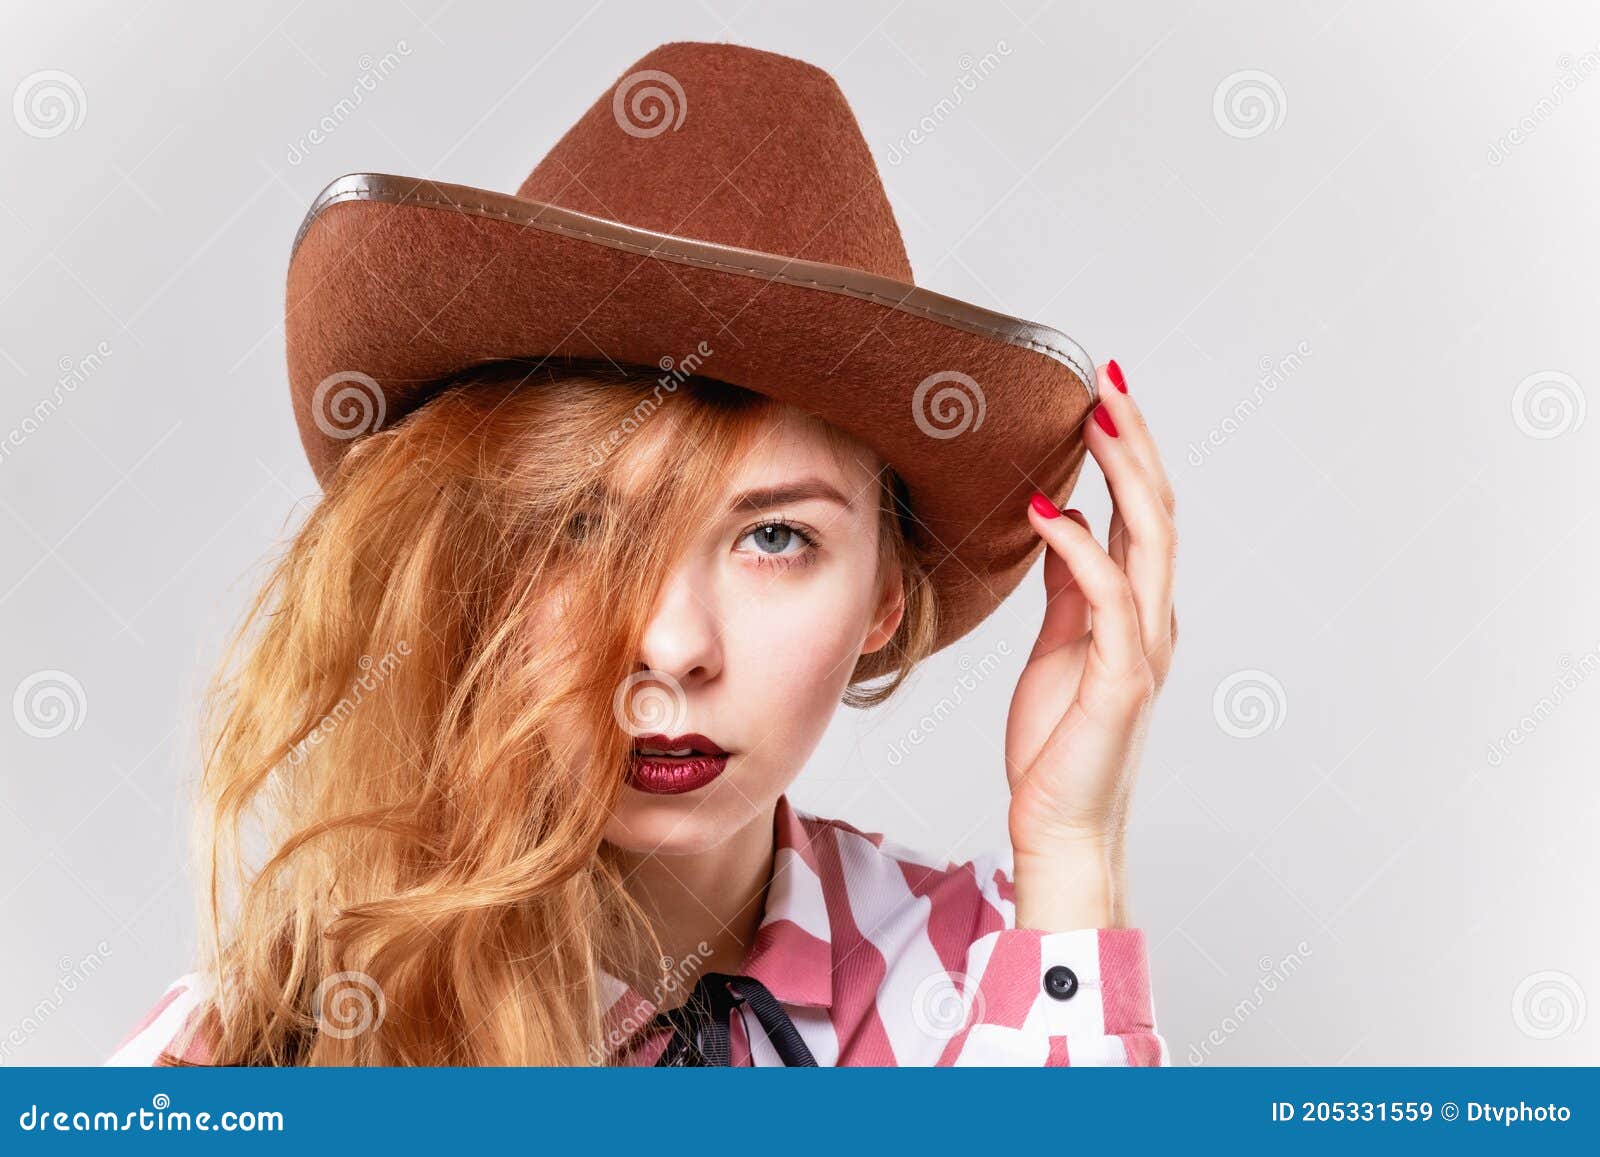 Blonde cowboy hat - wide 2